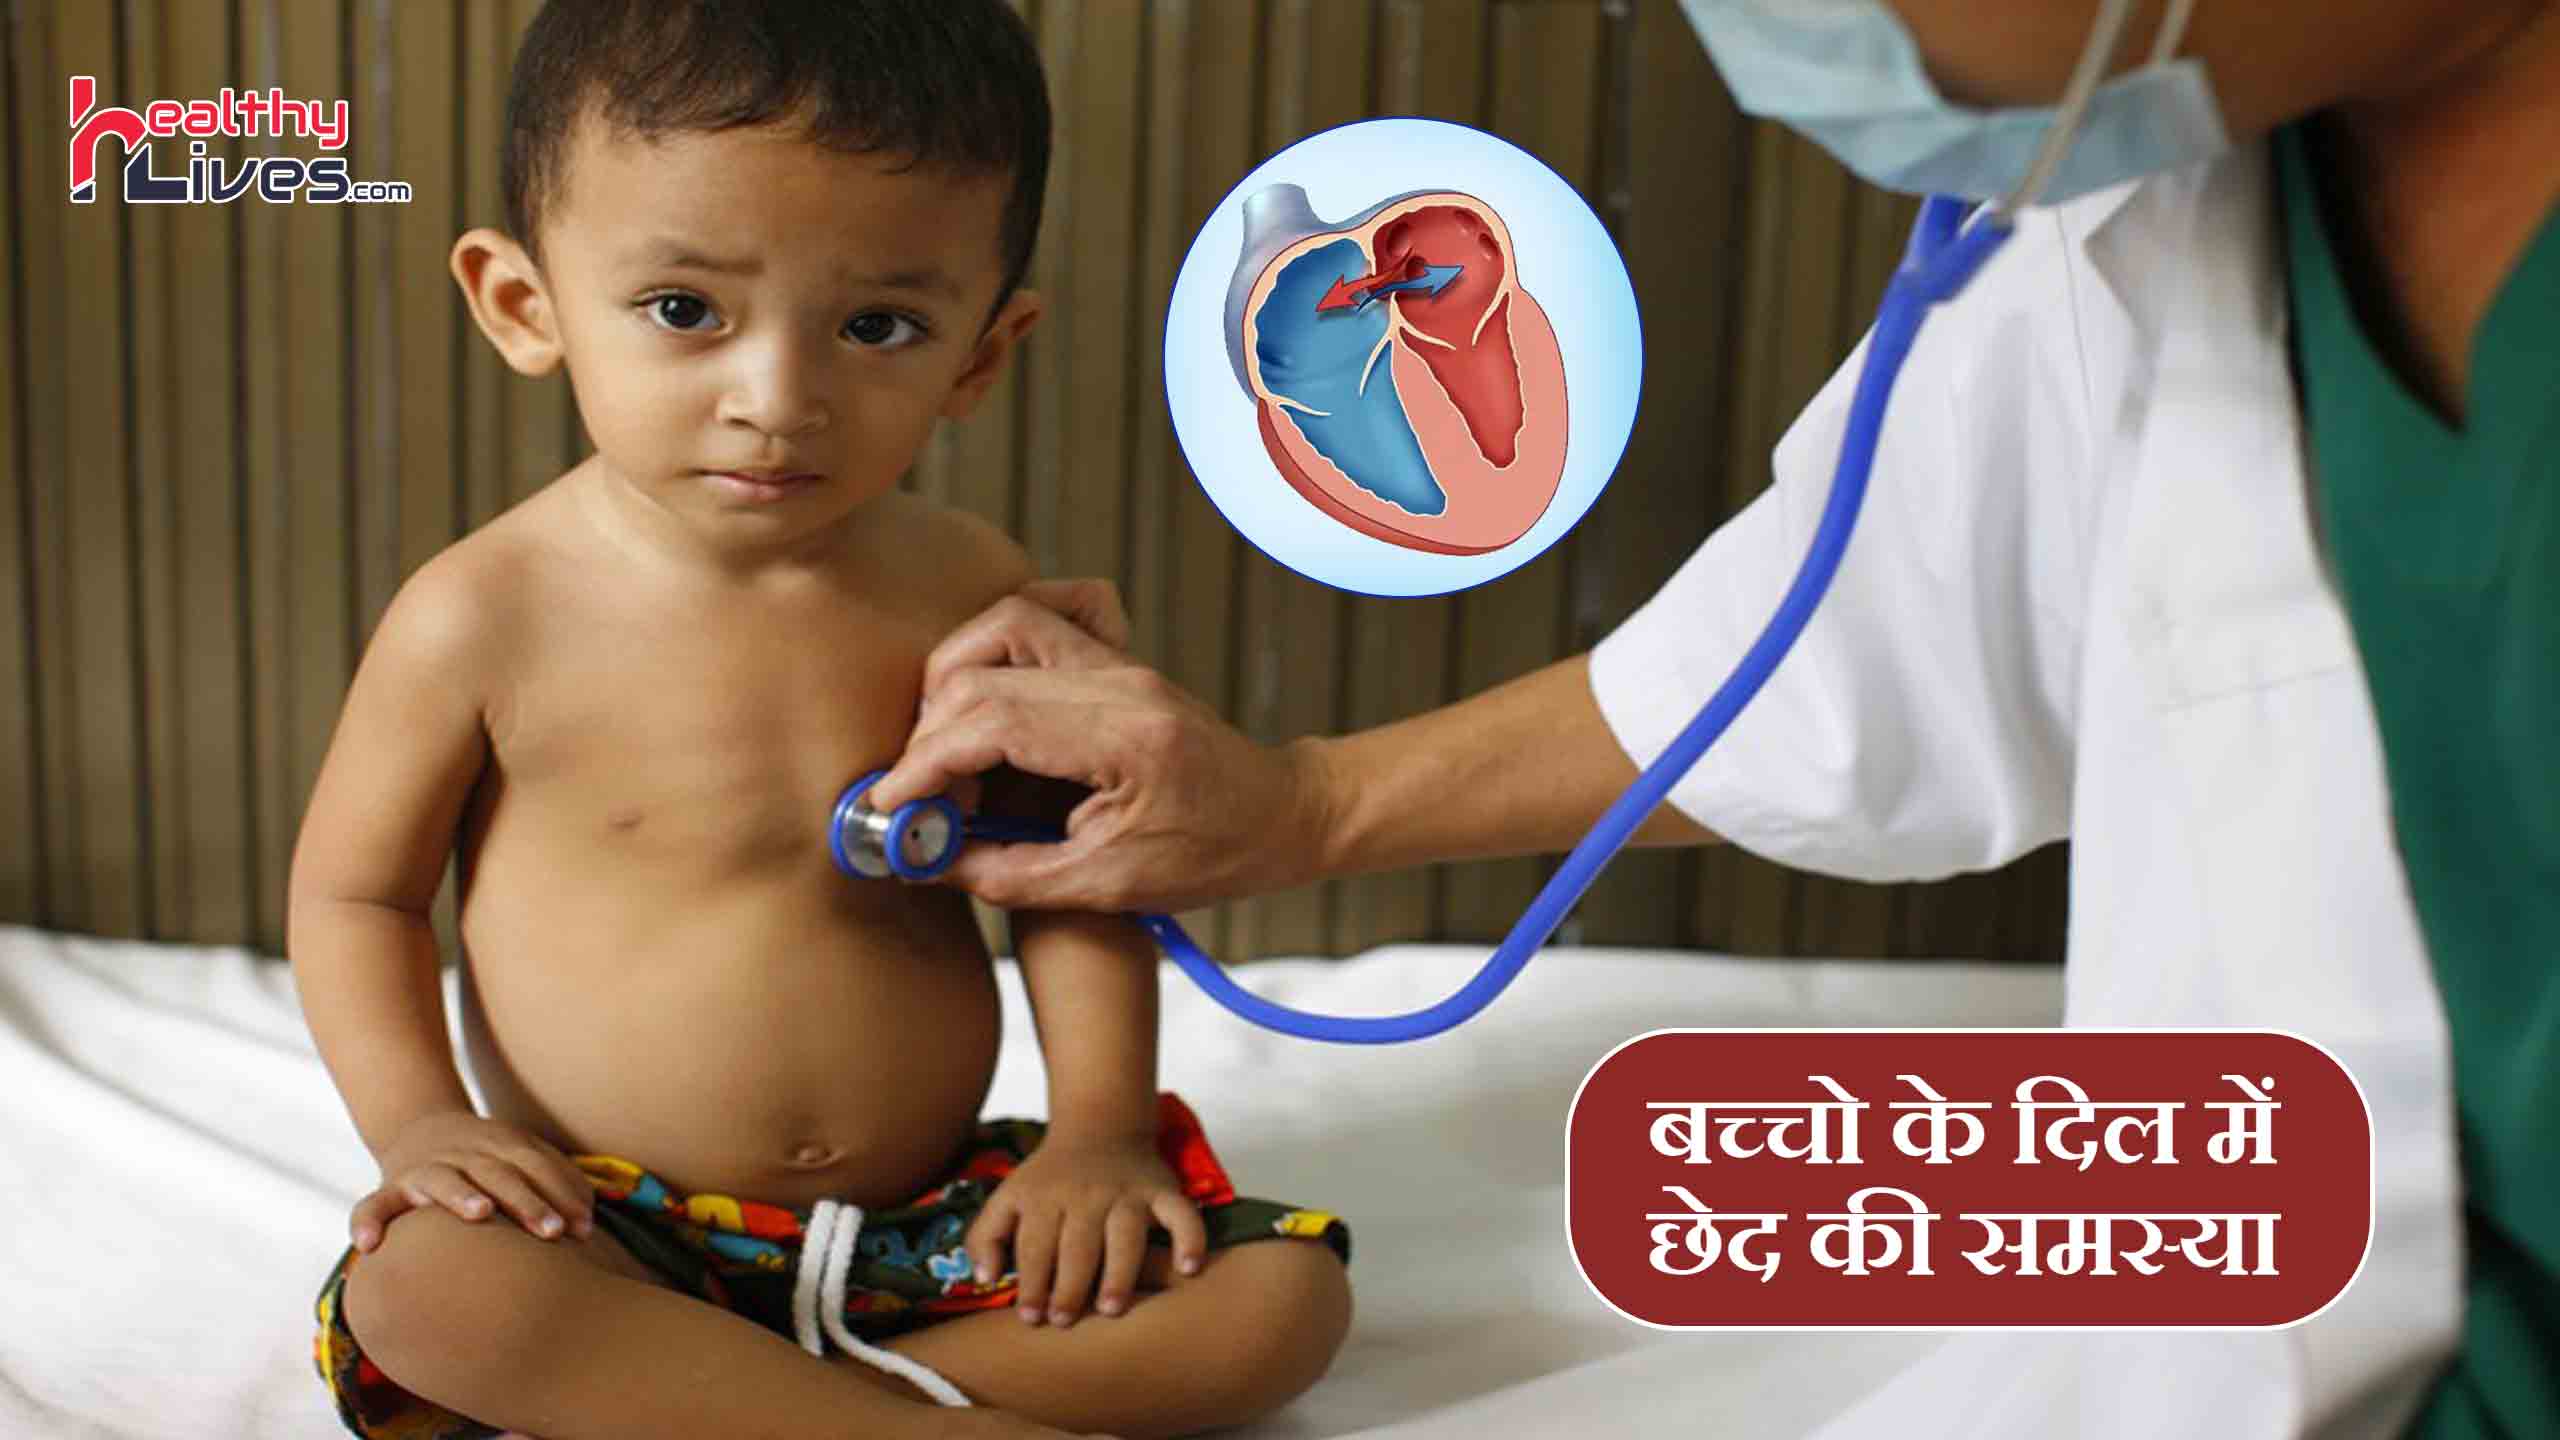 Heart Hole in Children - बच्चो के दिल में छेद की समस्या, जाने लक्षण और इलाज